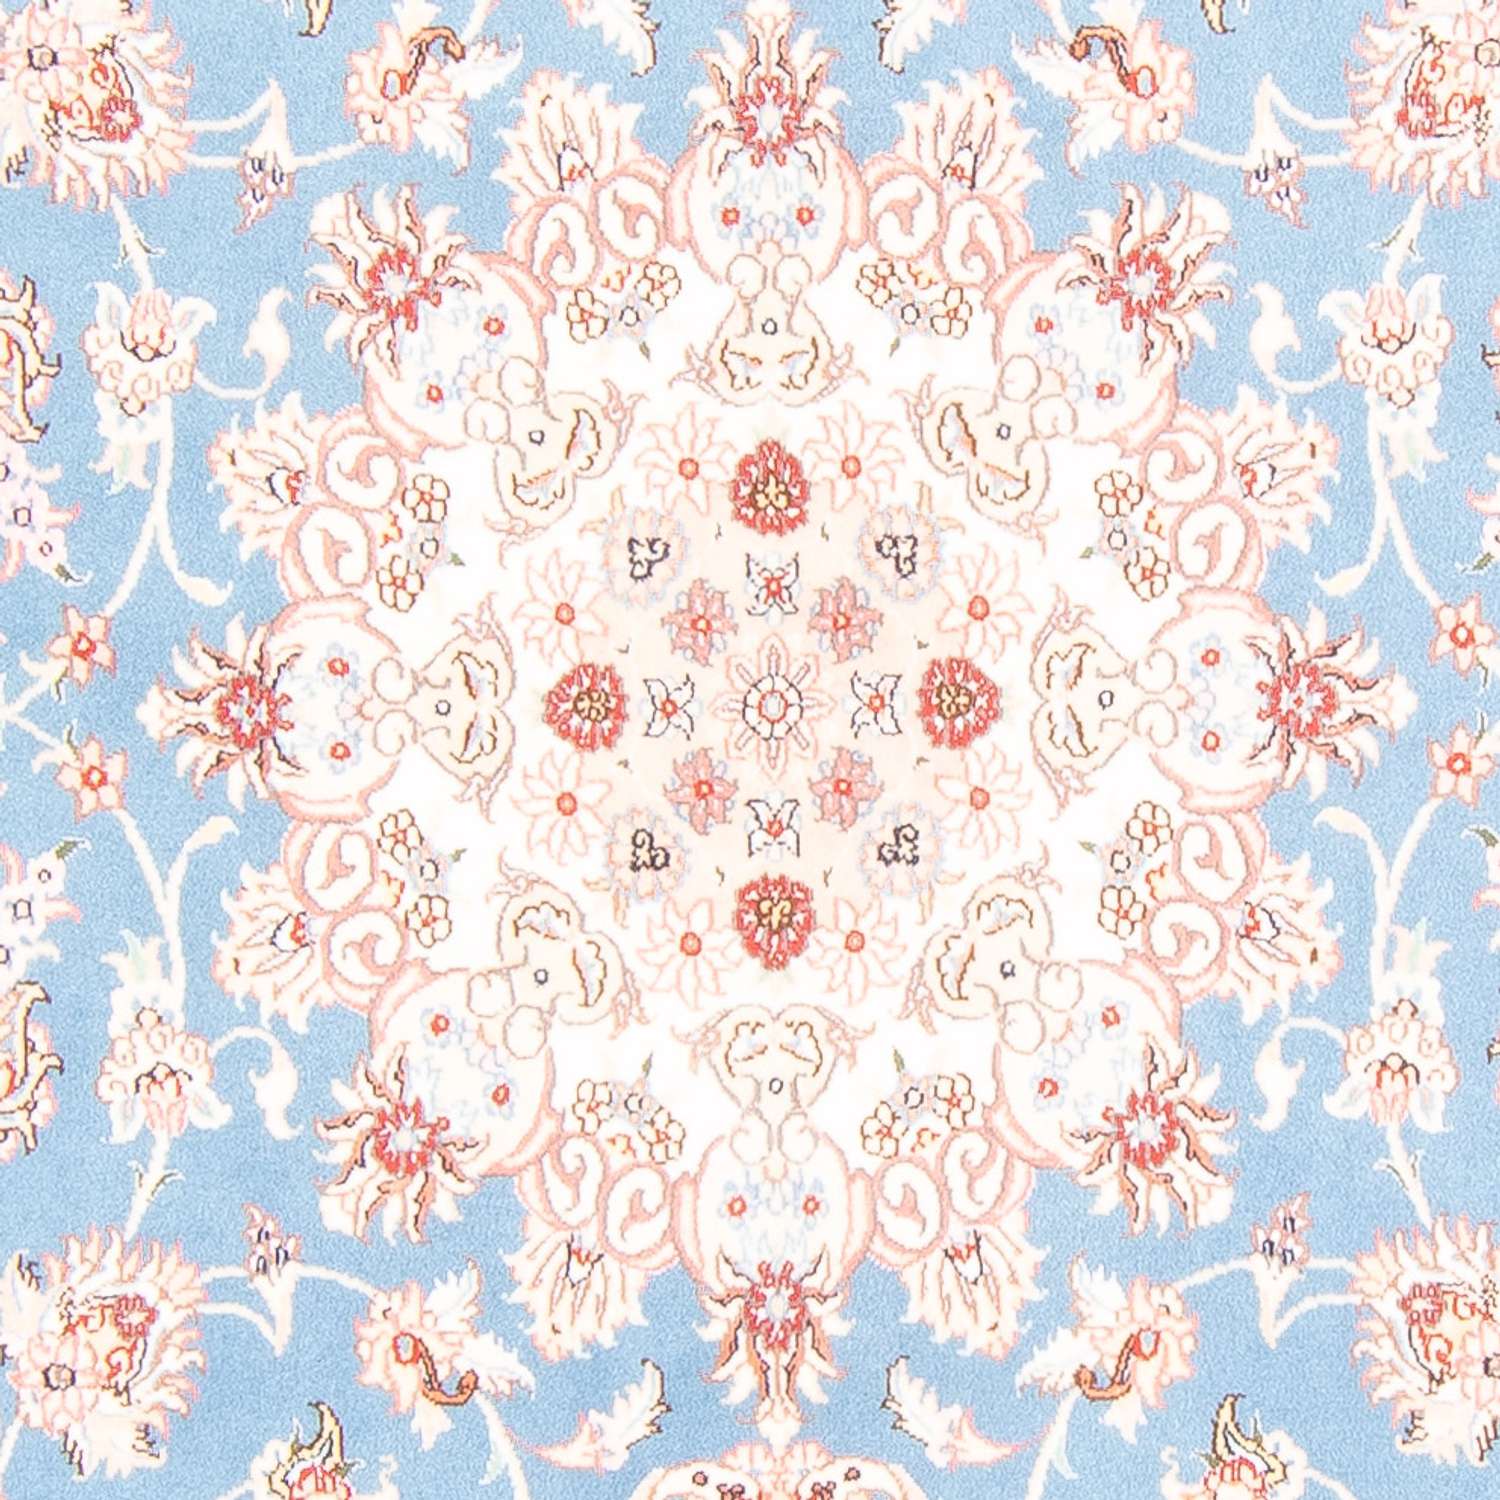 Perzisch tapijt - Tabriz - Royal - 244 x 168 cm - lichtblauw